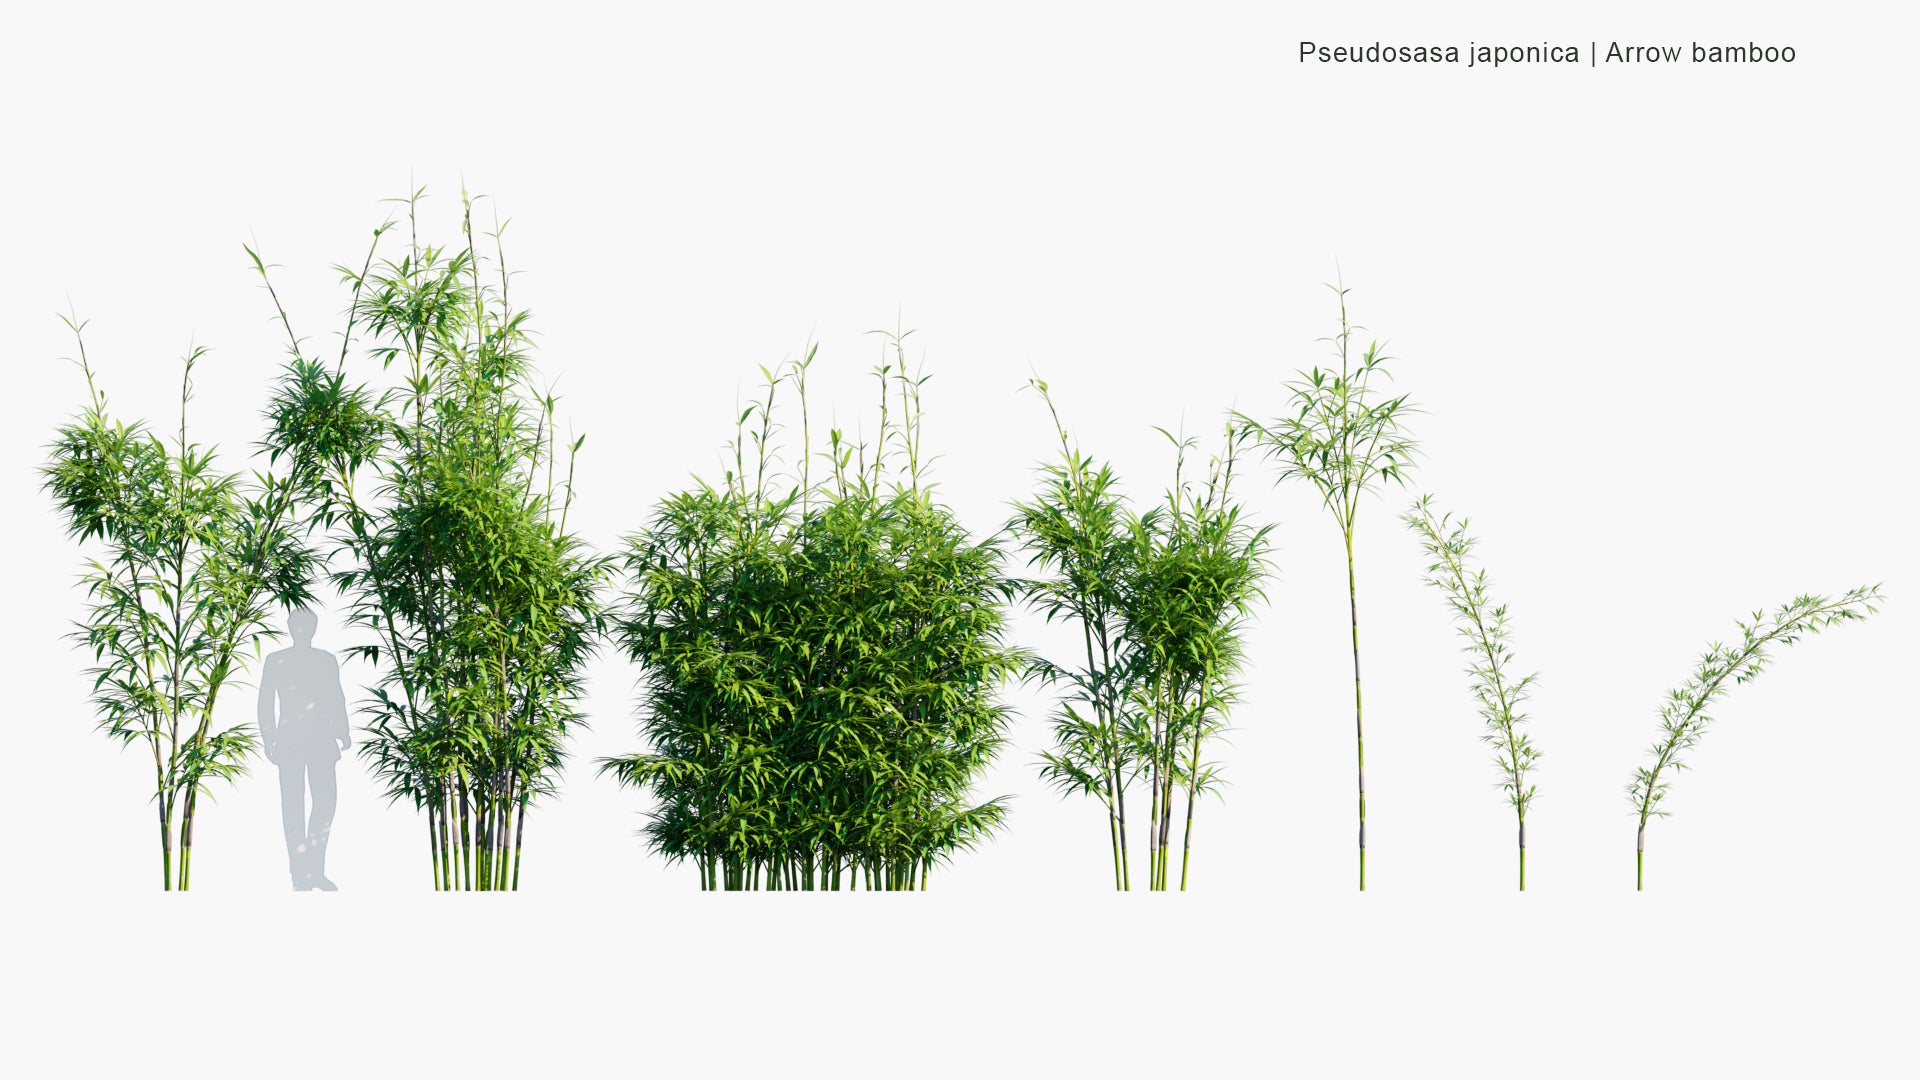 Bambù Metake - Bambusa Metake (Pseudosasa japonica)